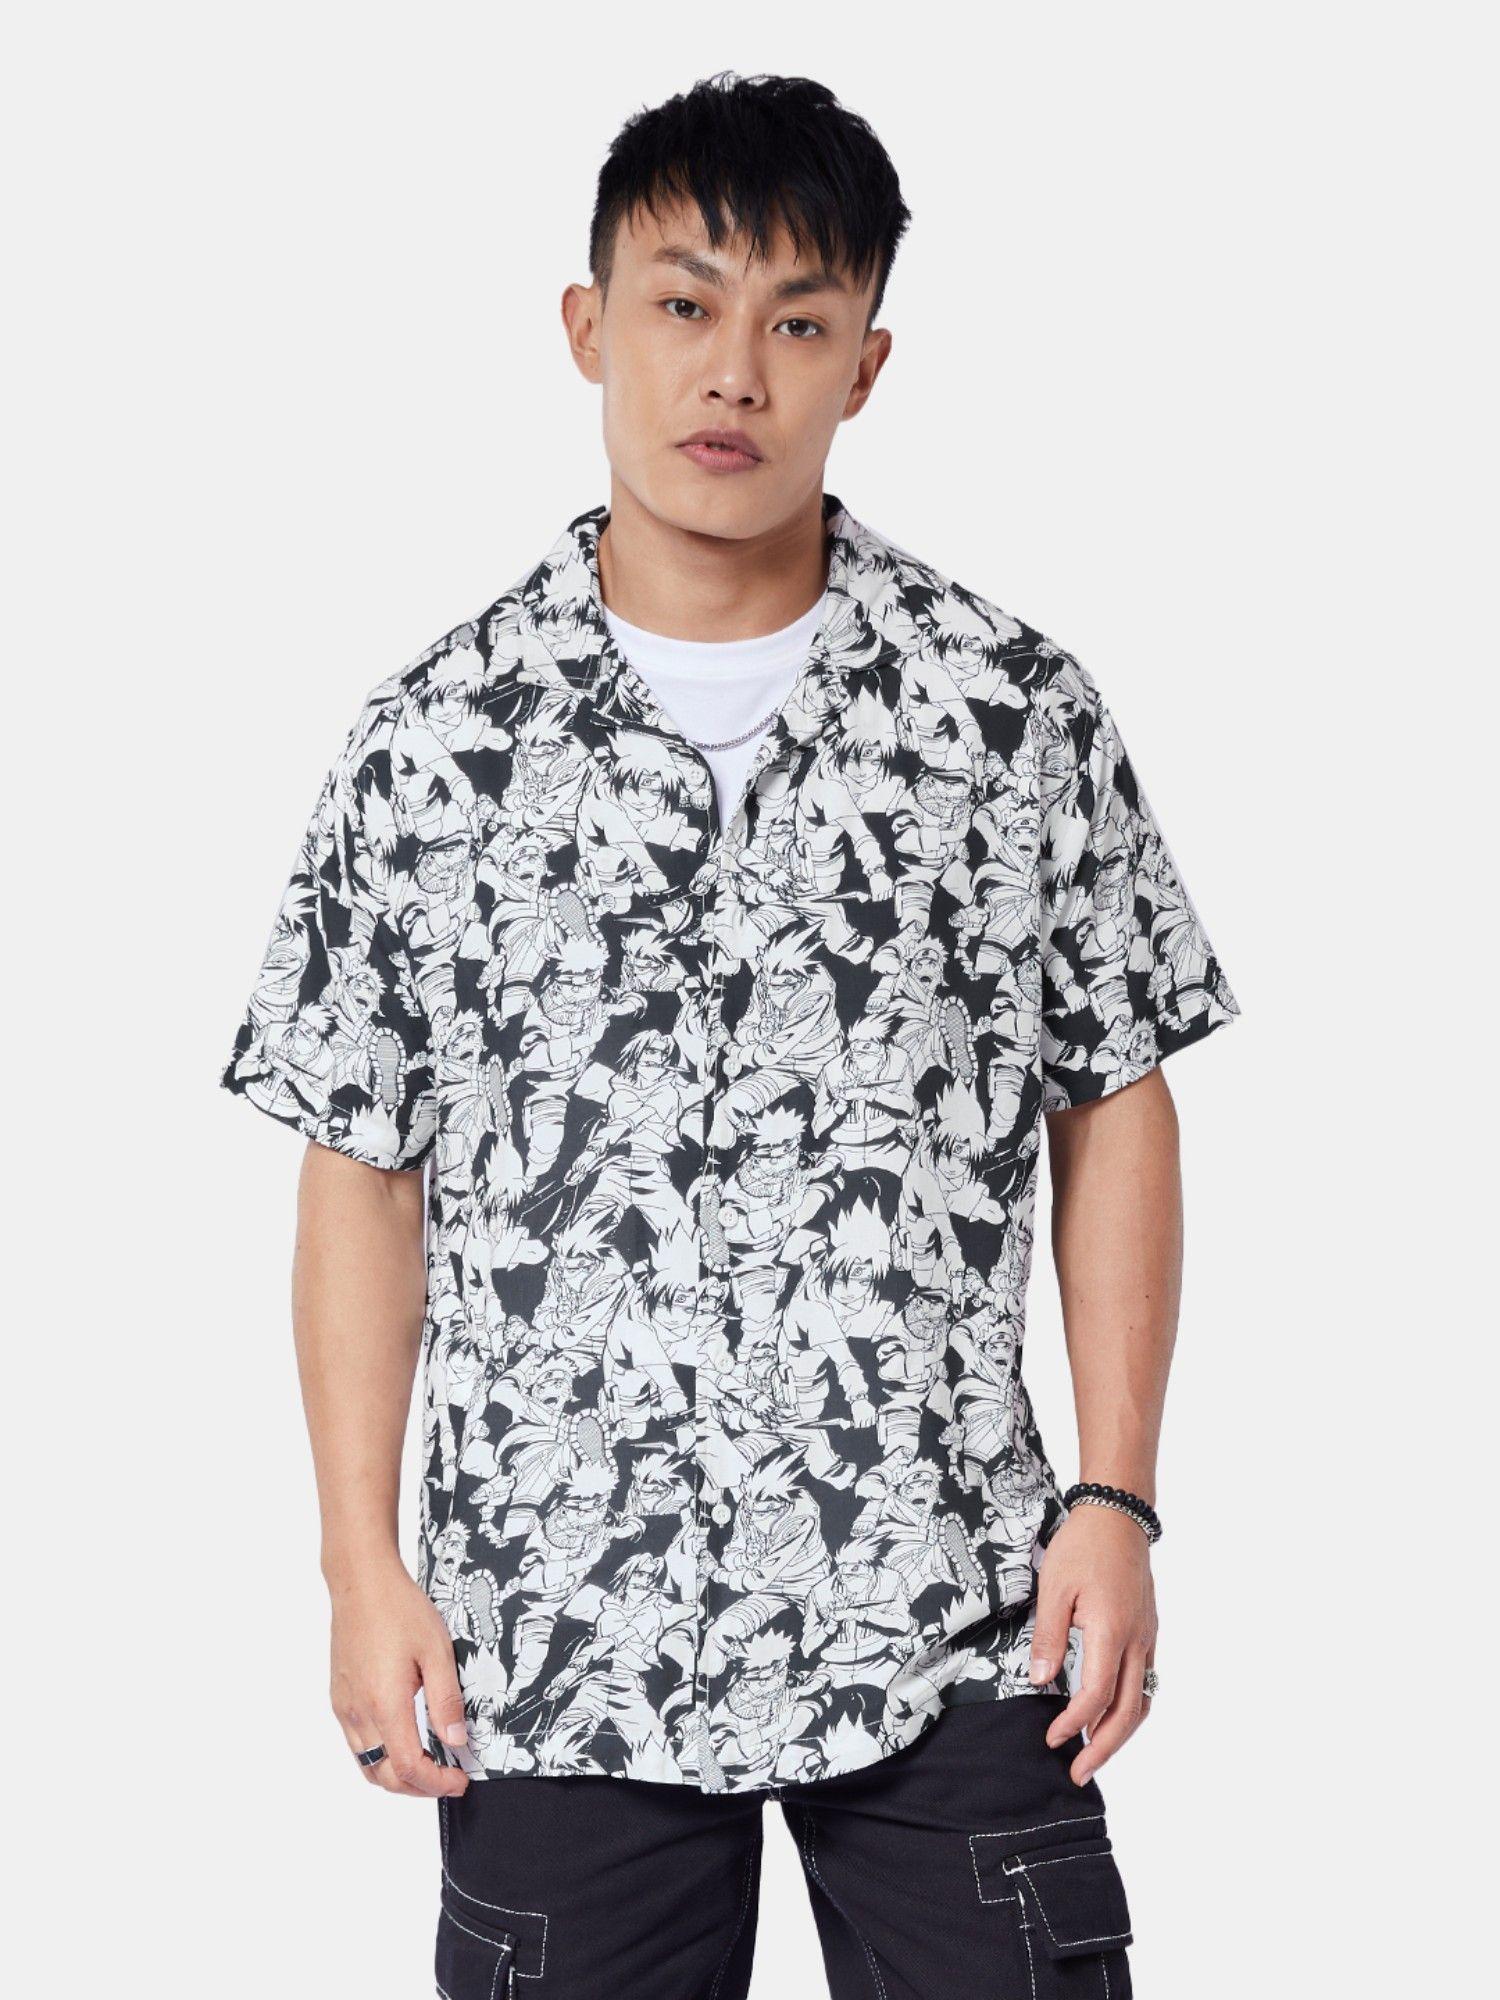 naruto pattern summer shirts